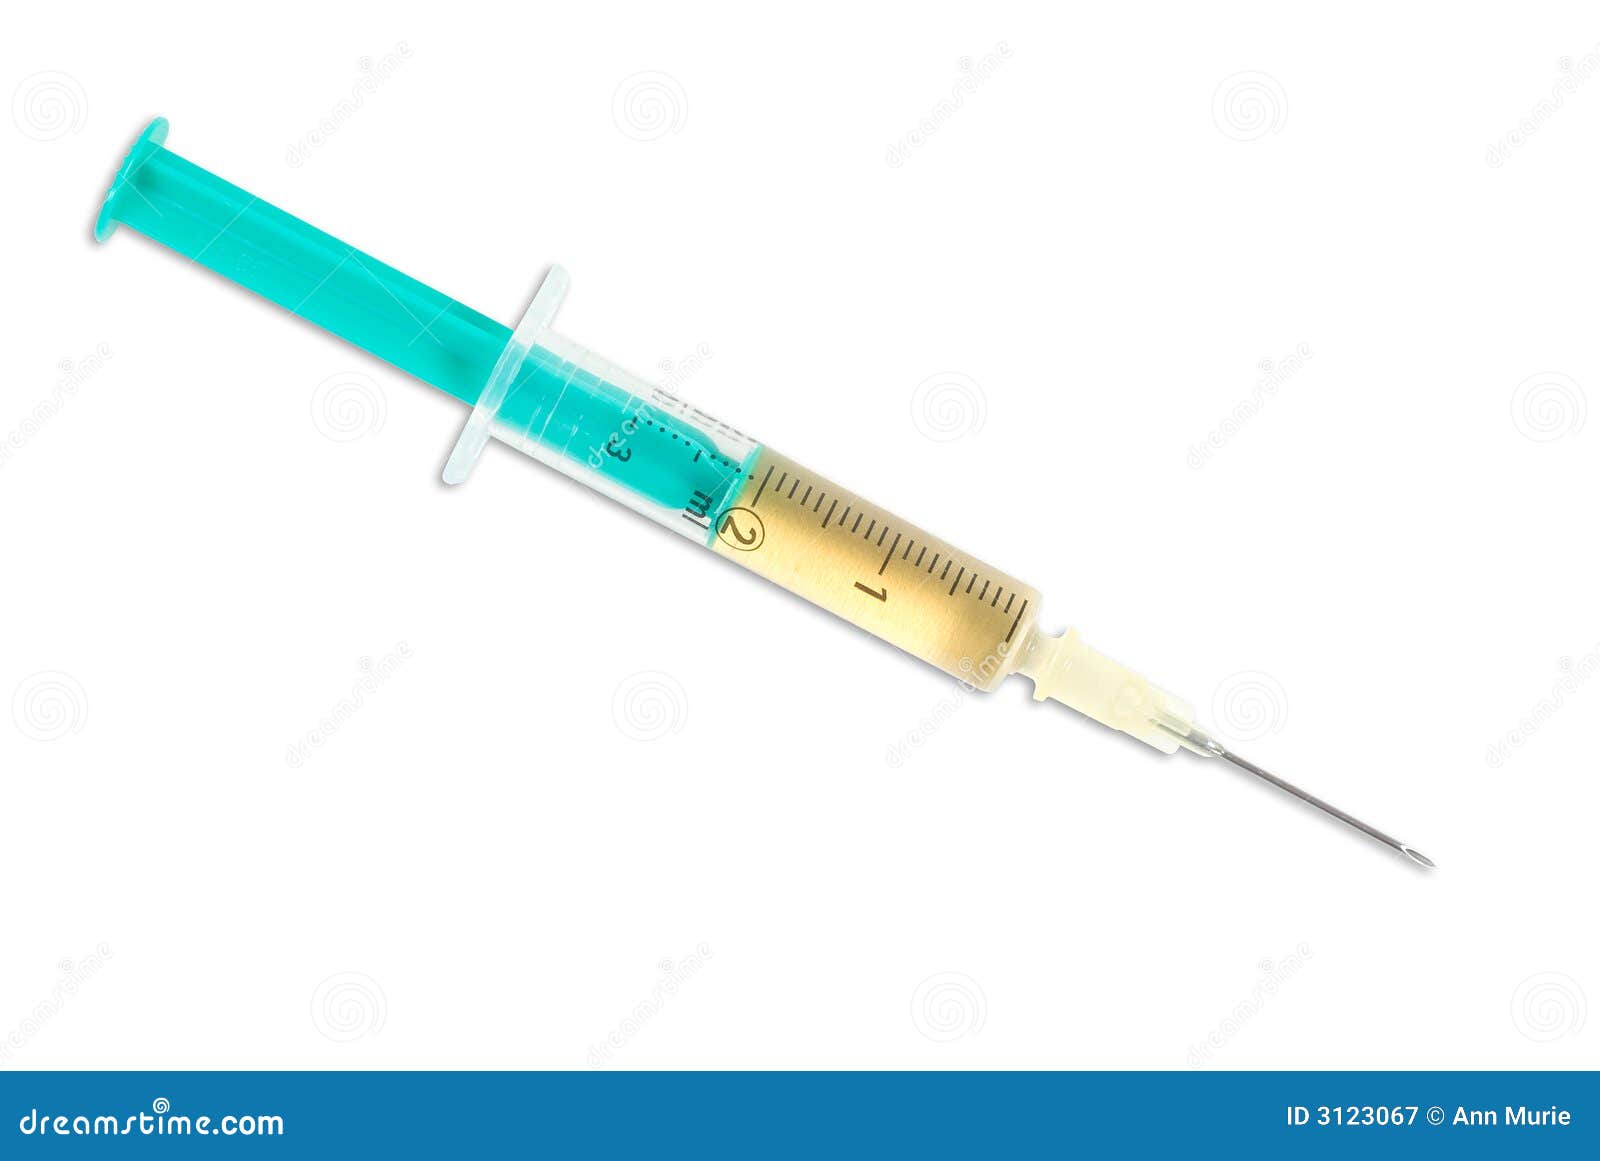 hypodermic syringe with needle